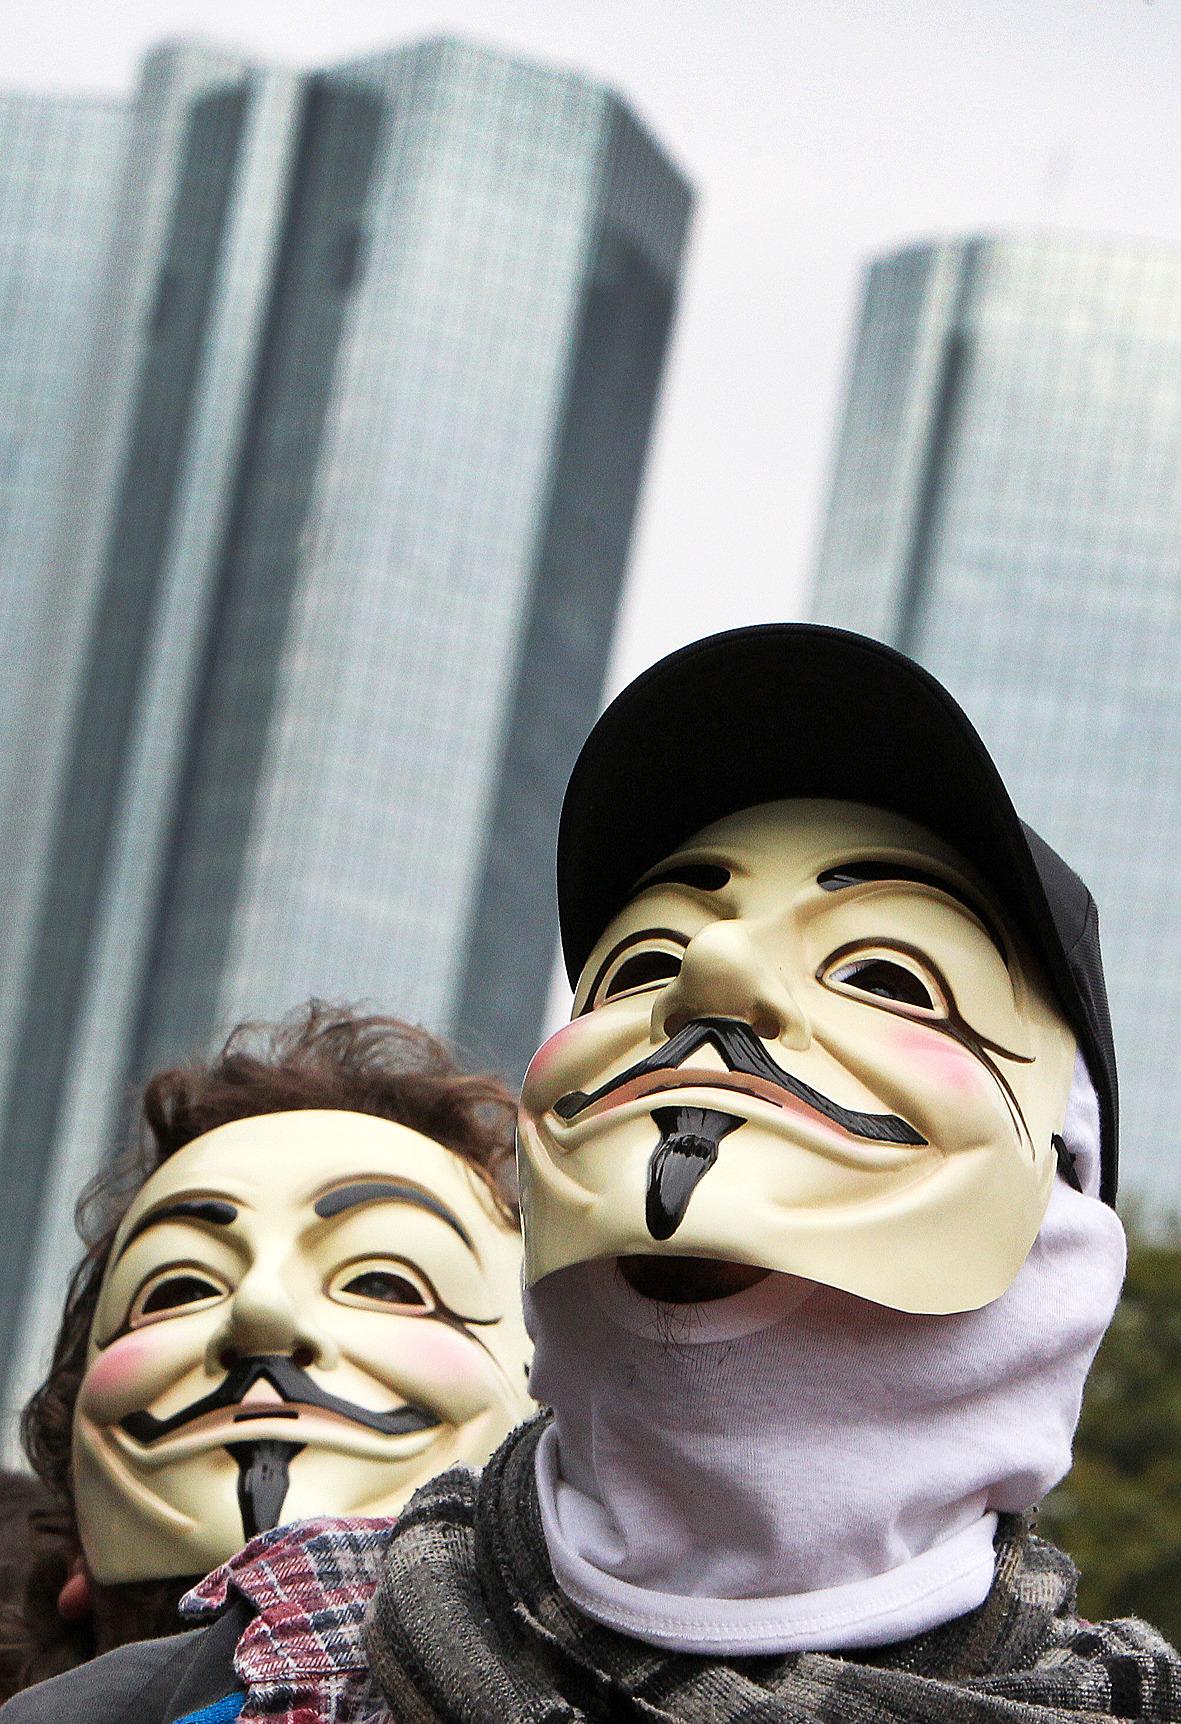 A FOR ANONYMOUS Guy Fawkes-masken från filmen ”V for Vendetta” har blivit symbolen för Anonymous och används flitigt av Occupy Wall street-rörelsen – här utanför Deutsche Bank i Frankfurt i slutet av oktober.